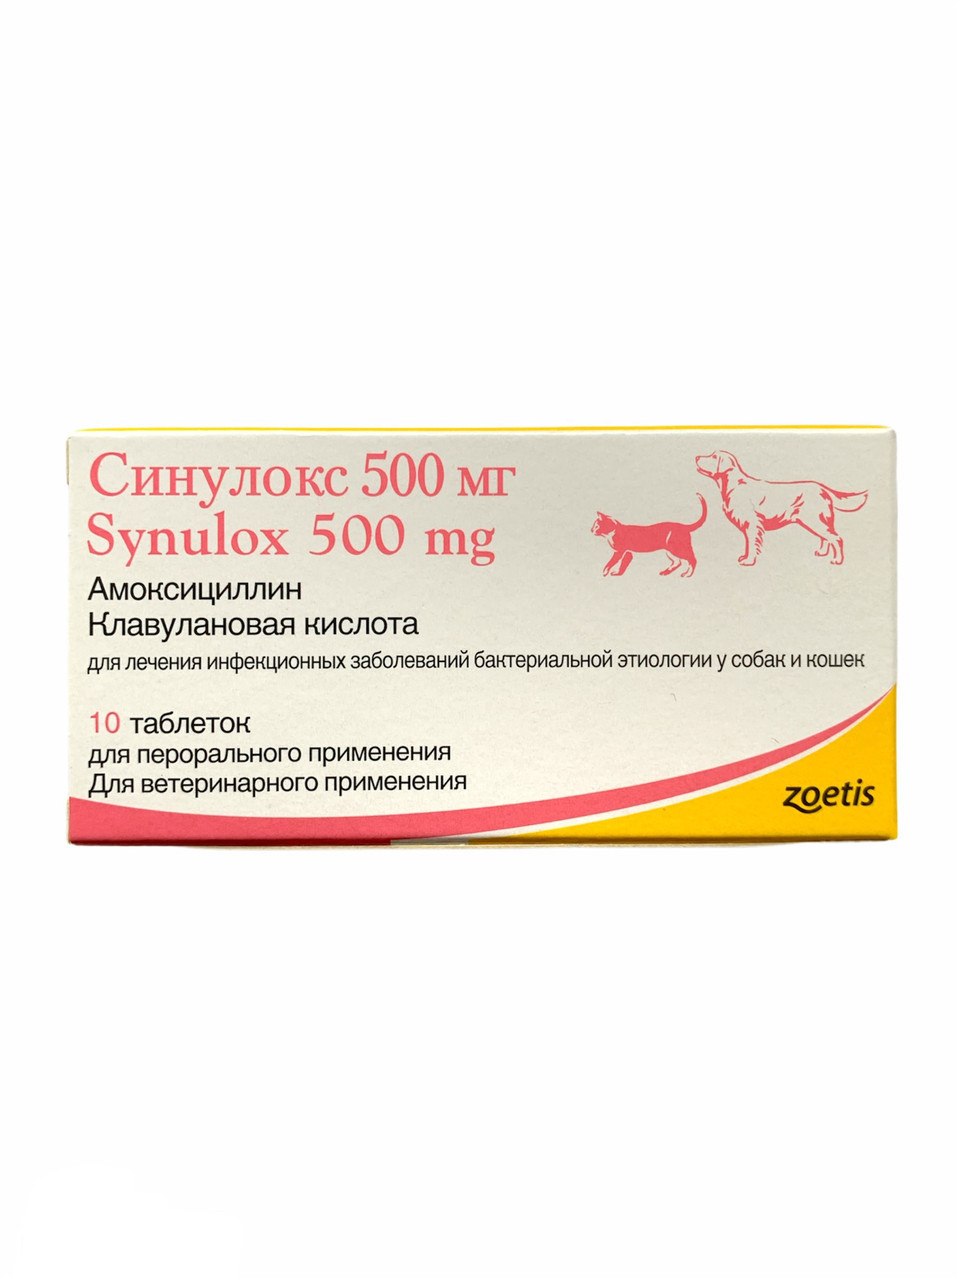 Купить синулокс для собак 500. Синулокс (500 мг 10 ТБ). Синулокс 500 мг для собак. Zoetis синулокс 500мг, 10таб. Синулокс 500 мг для собак уколы.